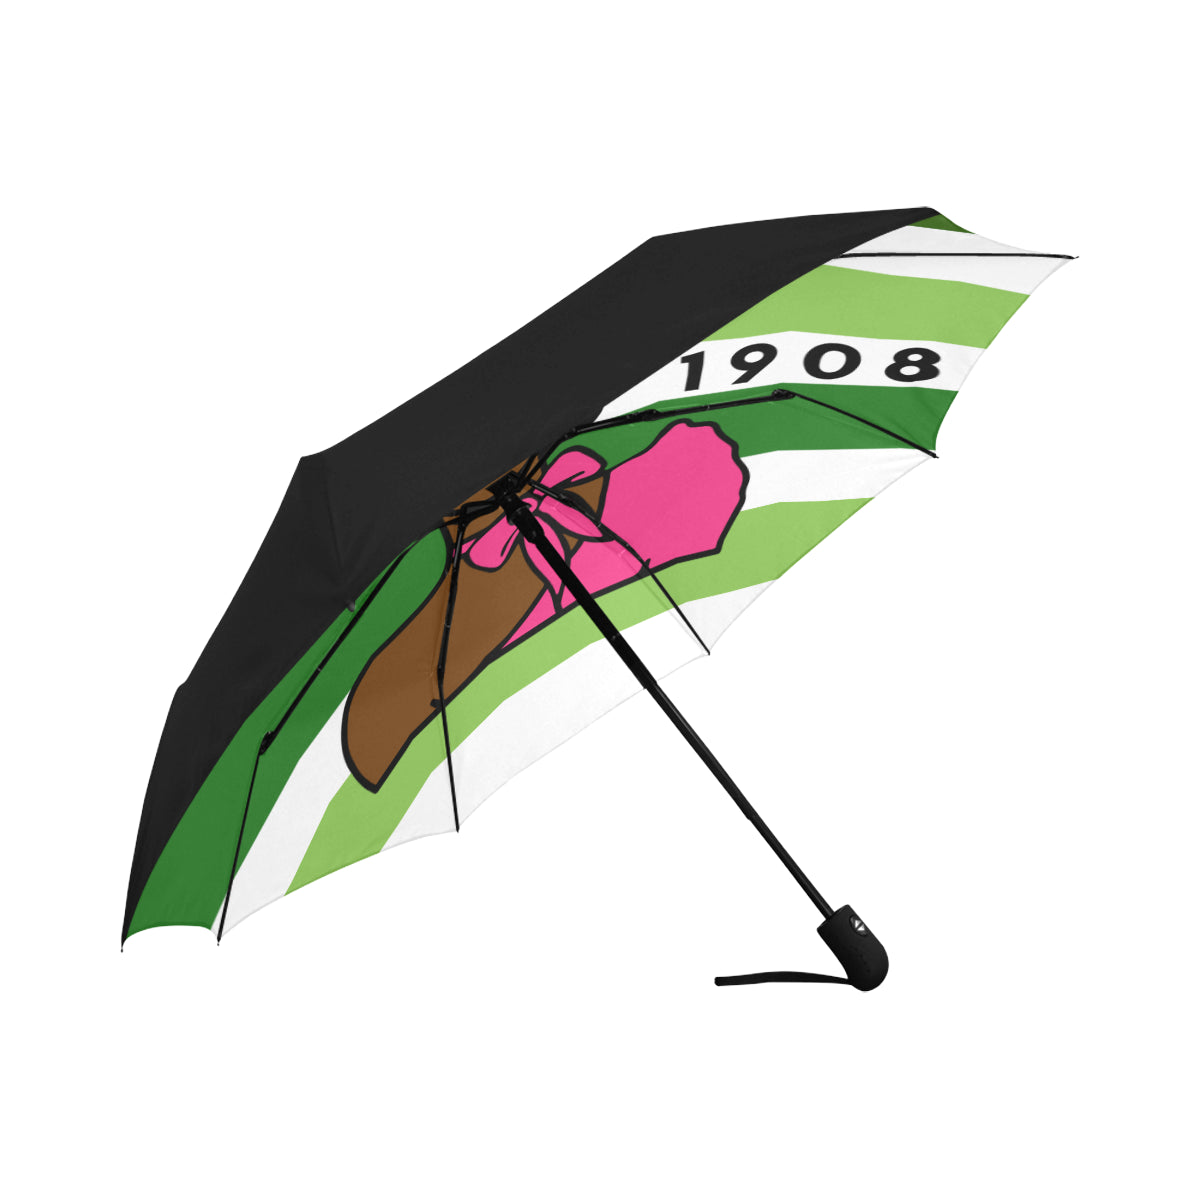 Shades of Green umbrella